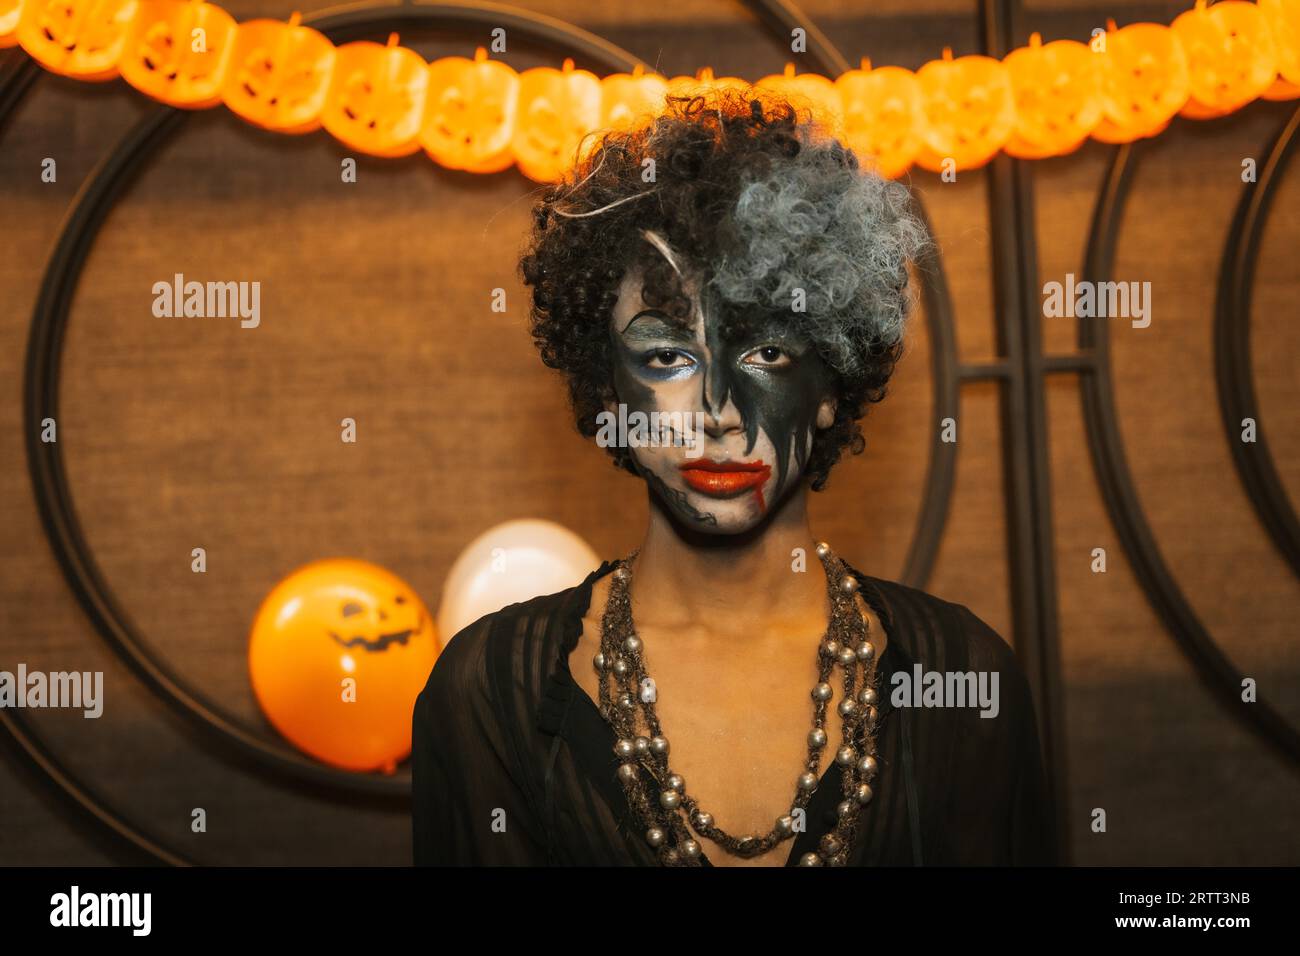 Fête d'Halloween avec des amis dans une discothèque, portrait d'un homme en costume Banque D'Images